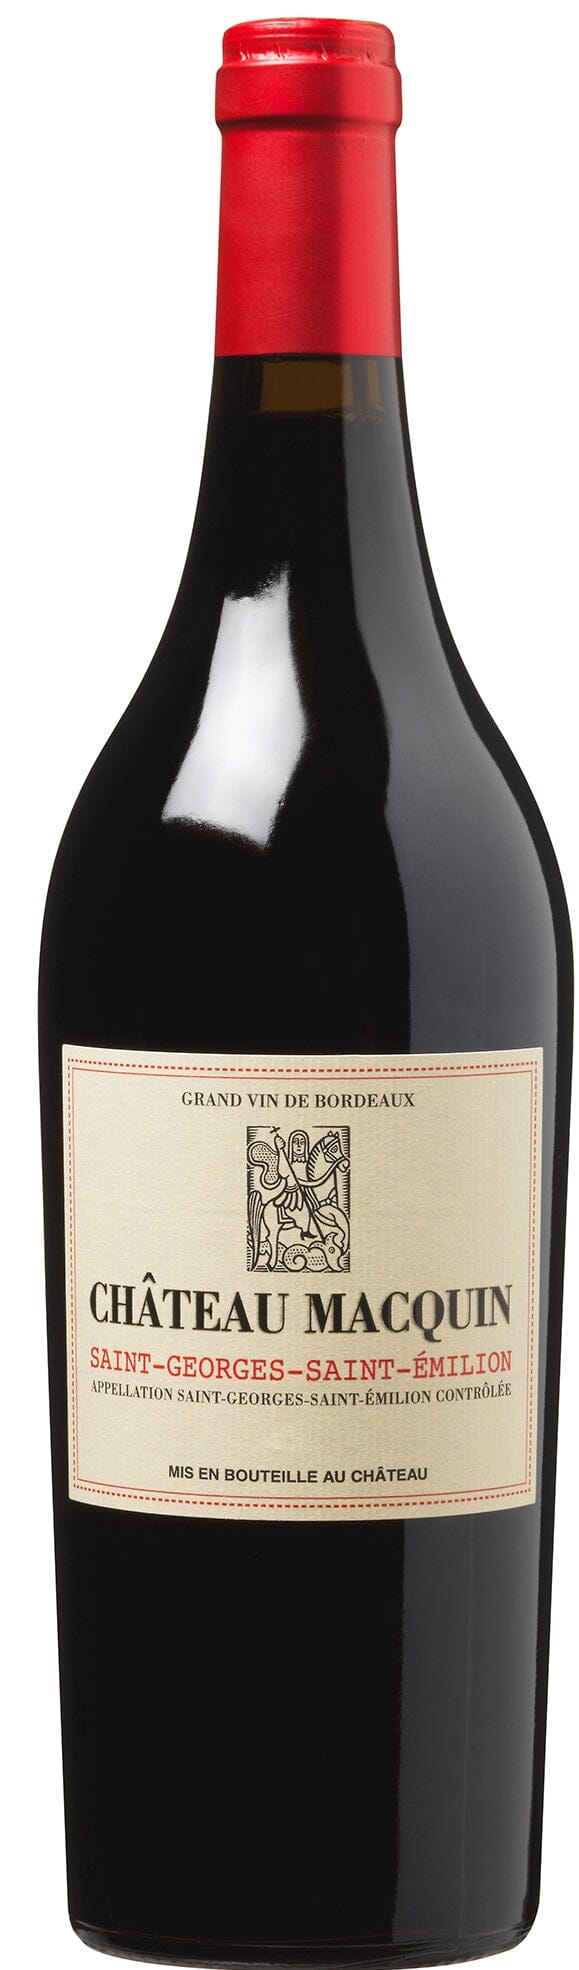 Château Macquin, Saint-Georges-Saint-Émilion, 2020 Wine Bottle Liberty Wines 